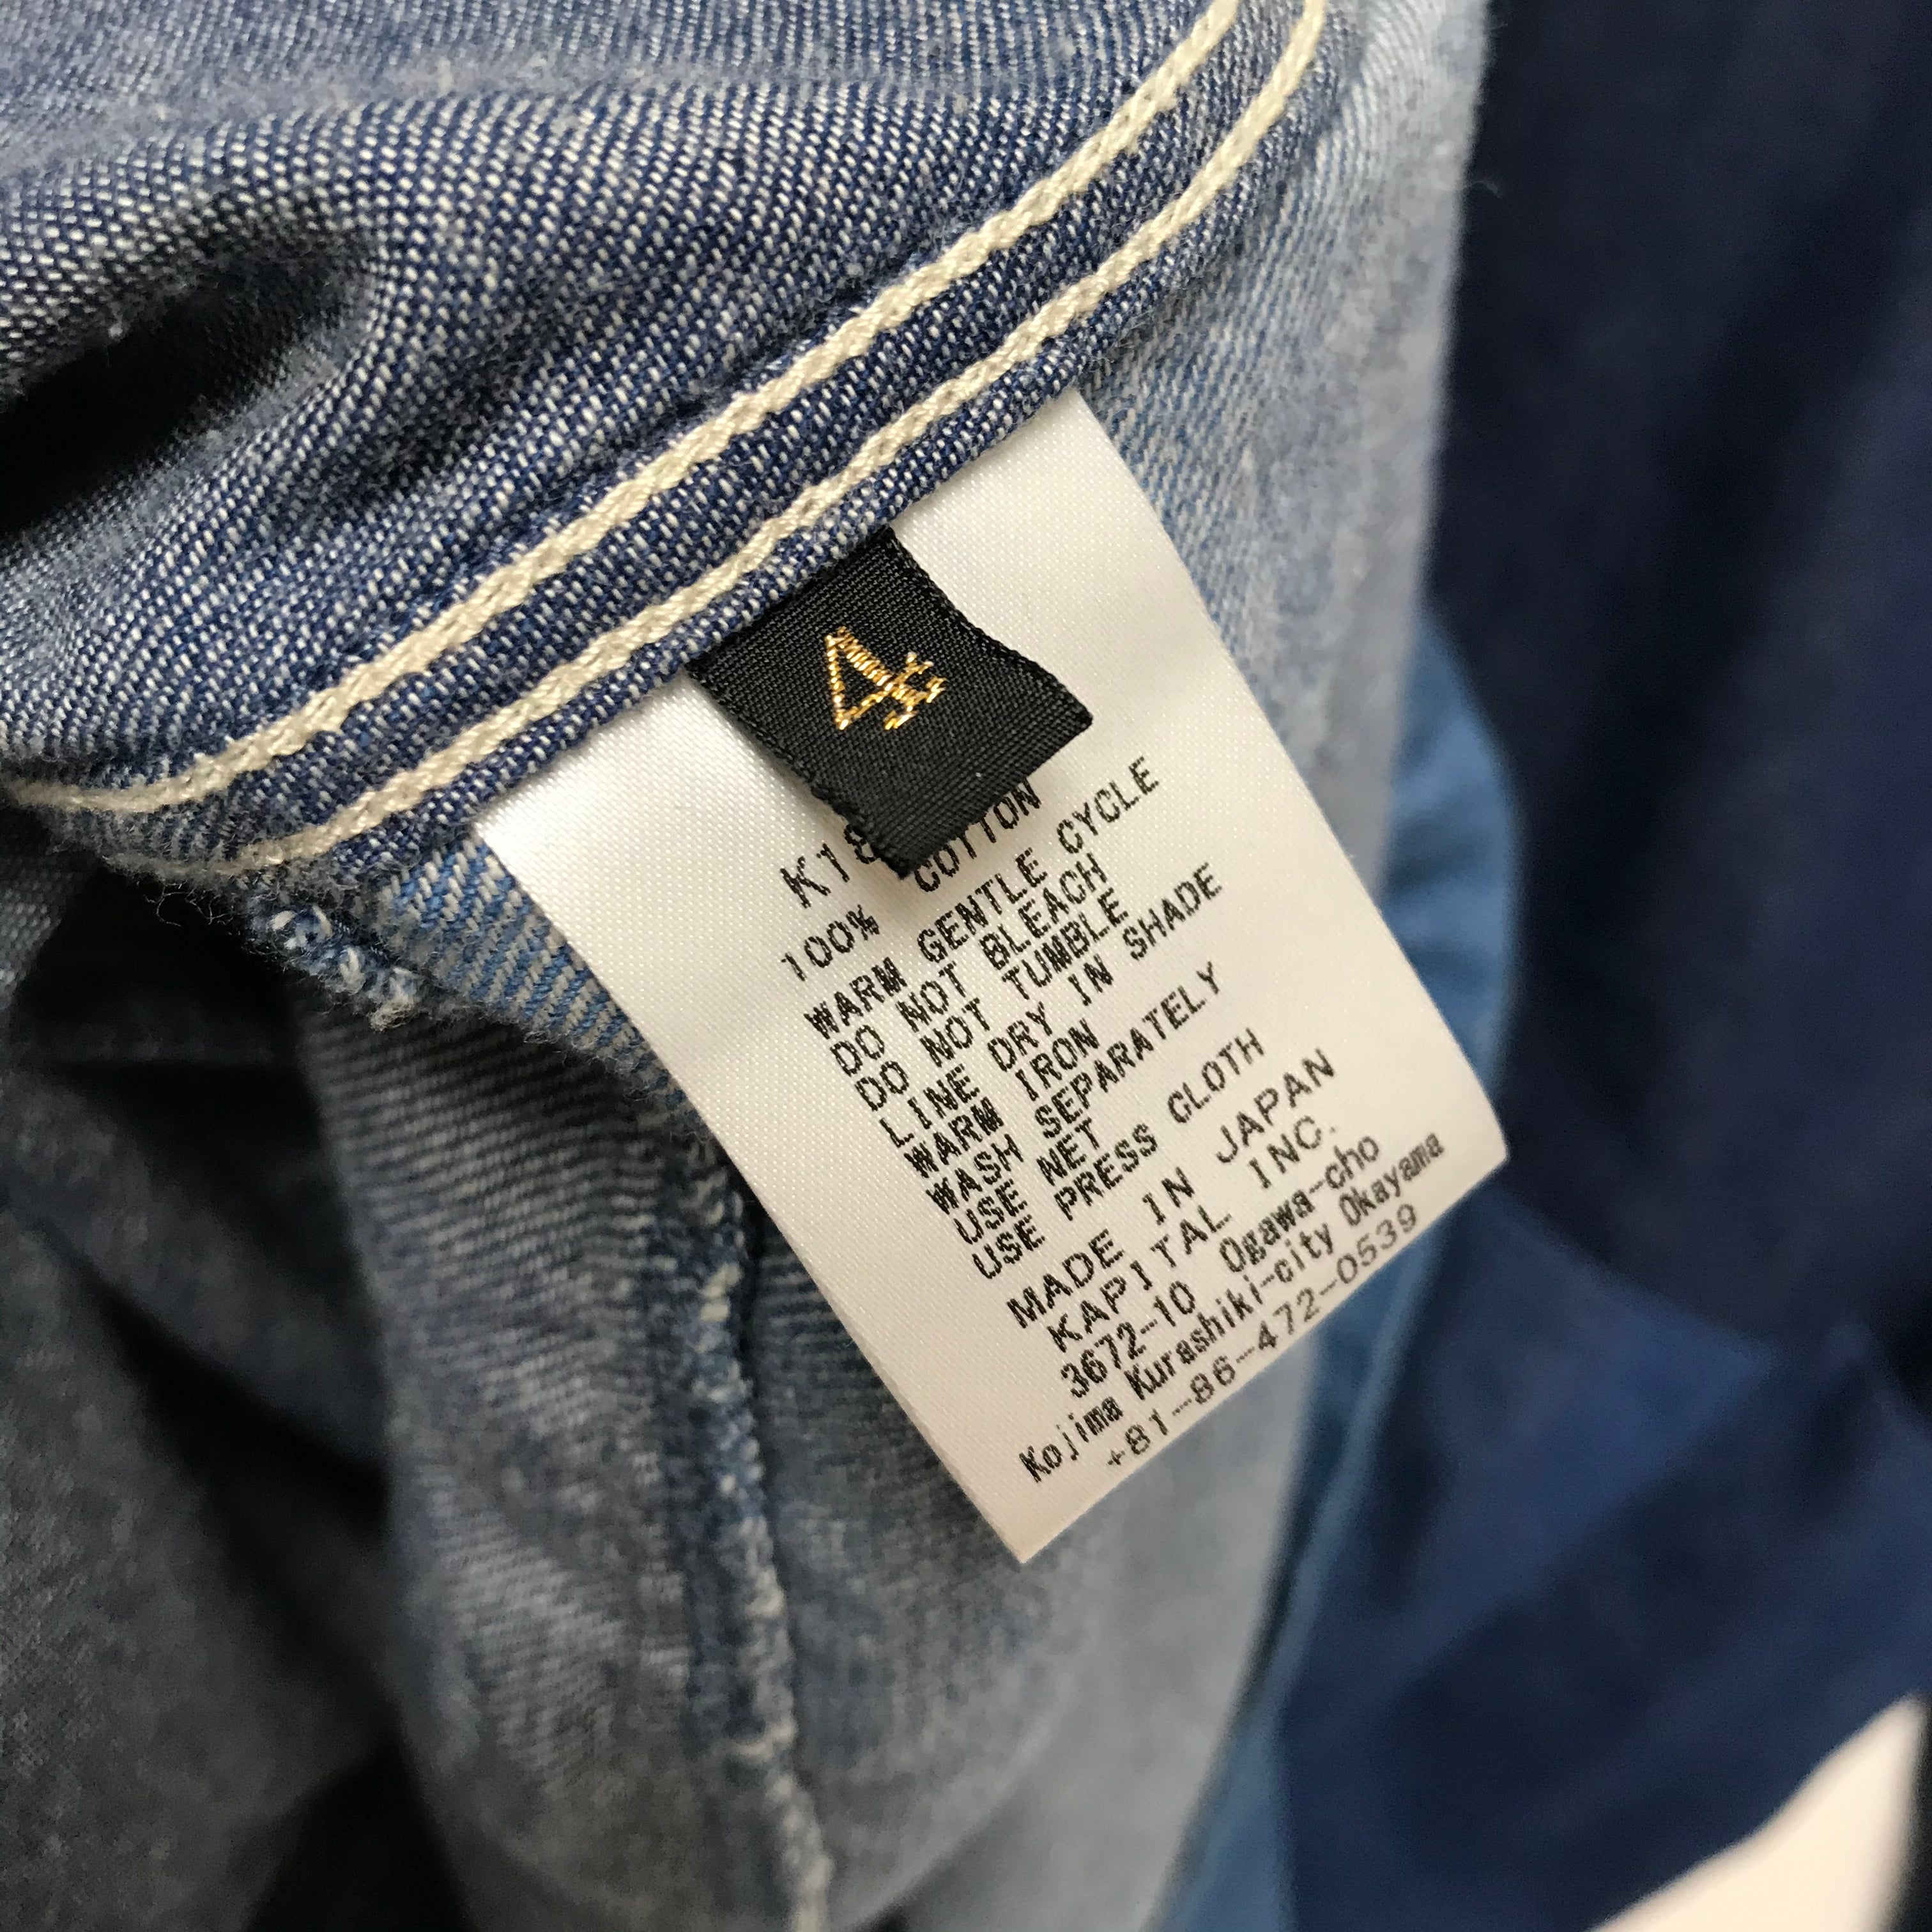 XL] Kapital 8oz Denim 4 Tone Kakashi Shirt Jacket